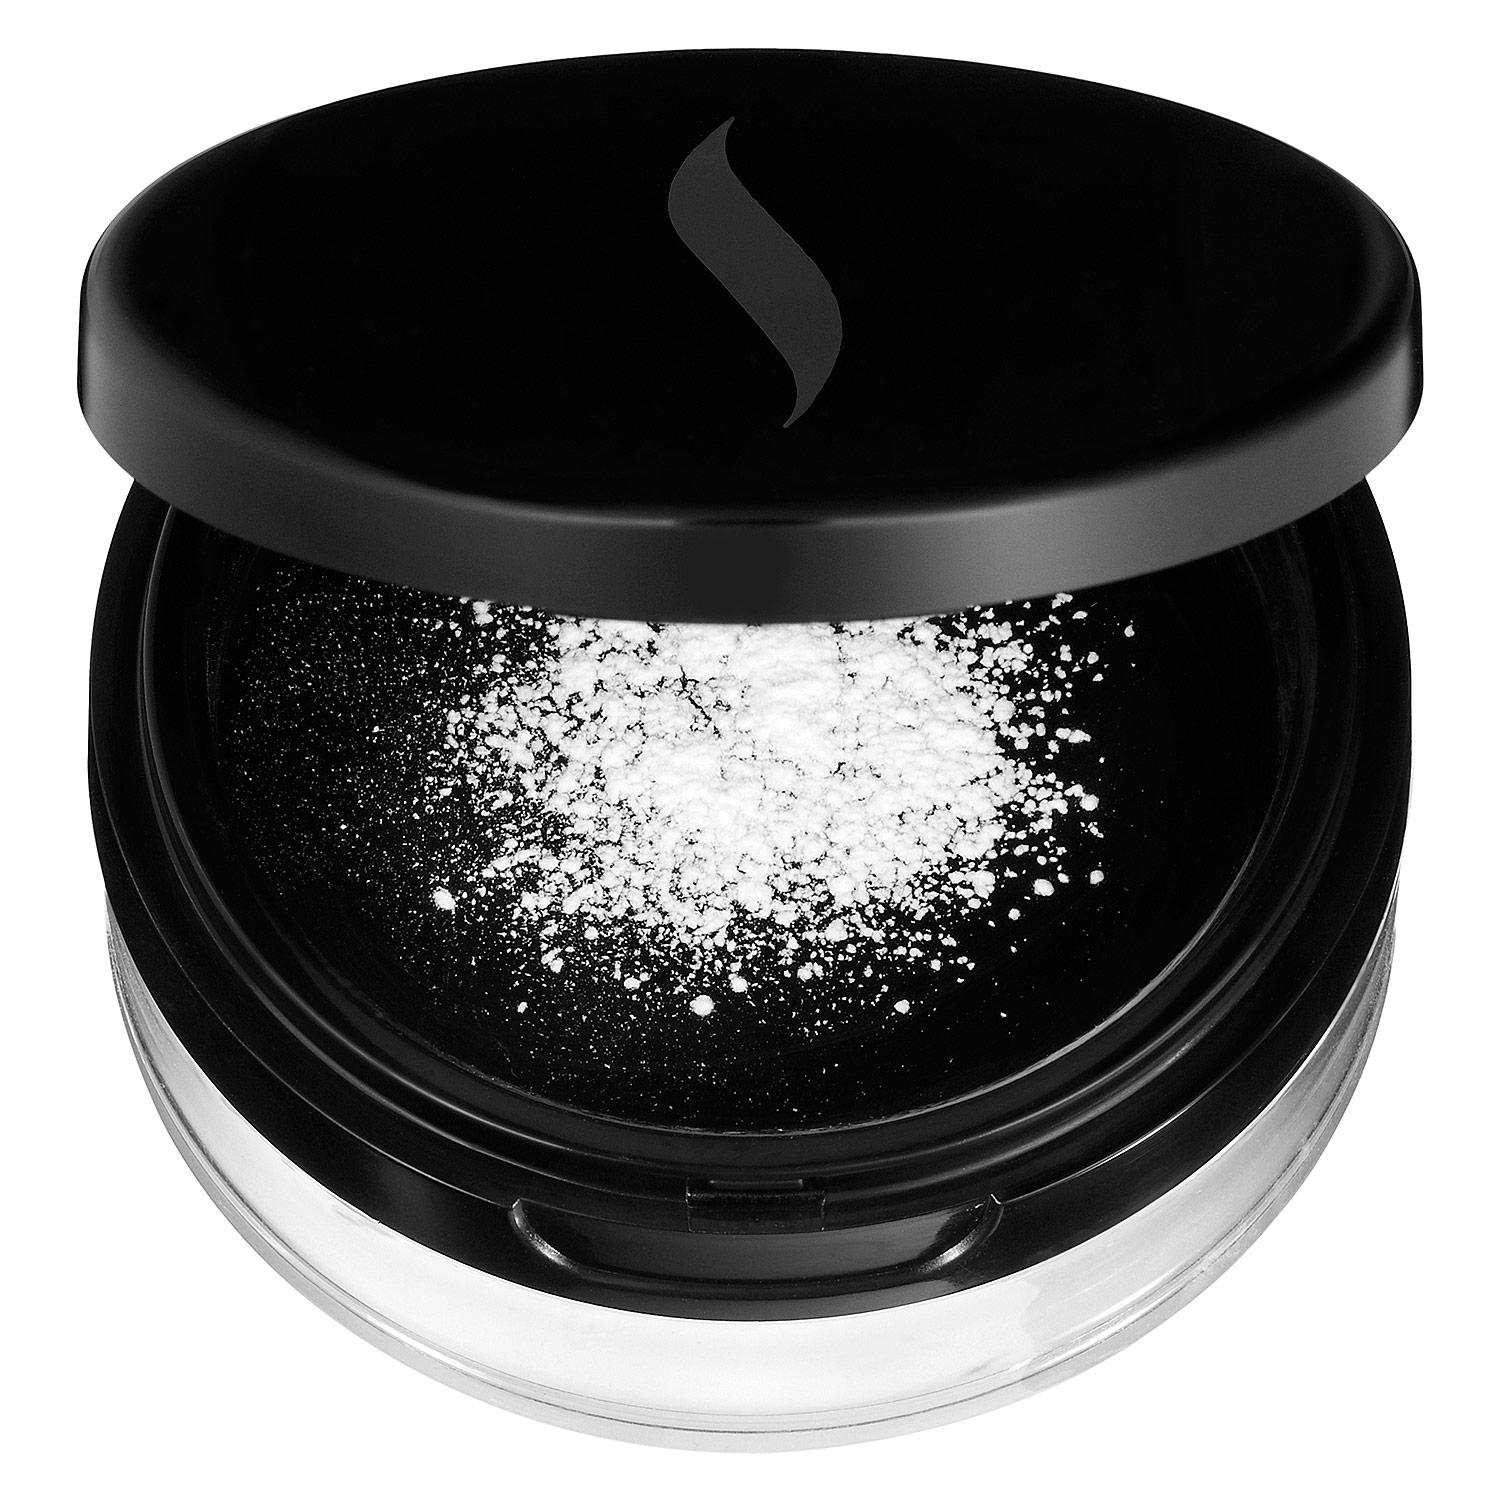 Sephora Smoothing Translucent Setting Powder Universal